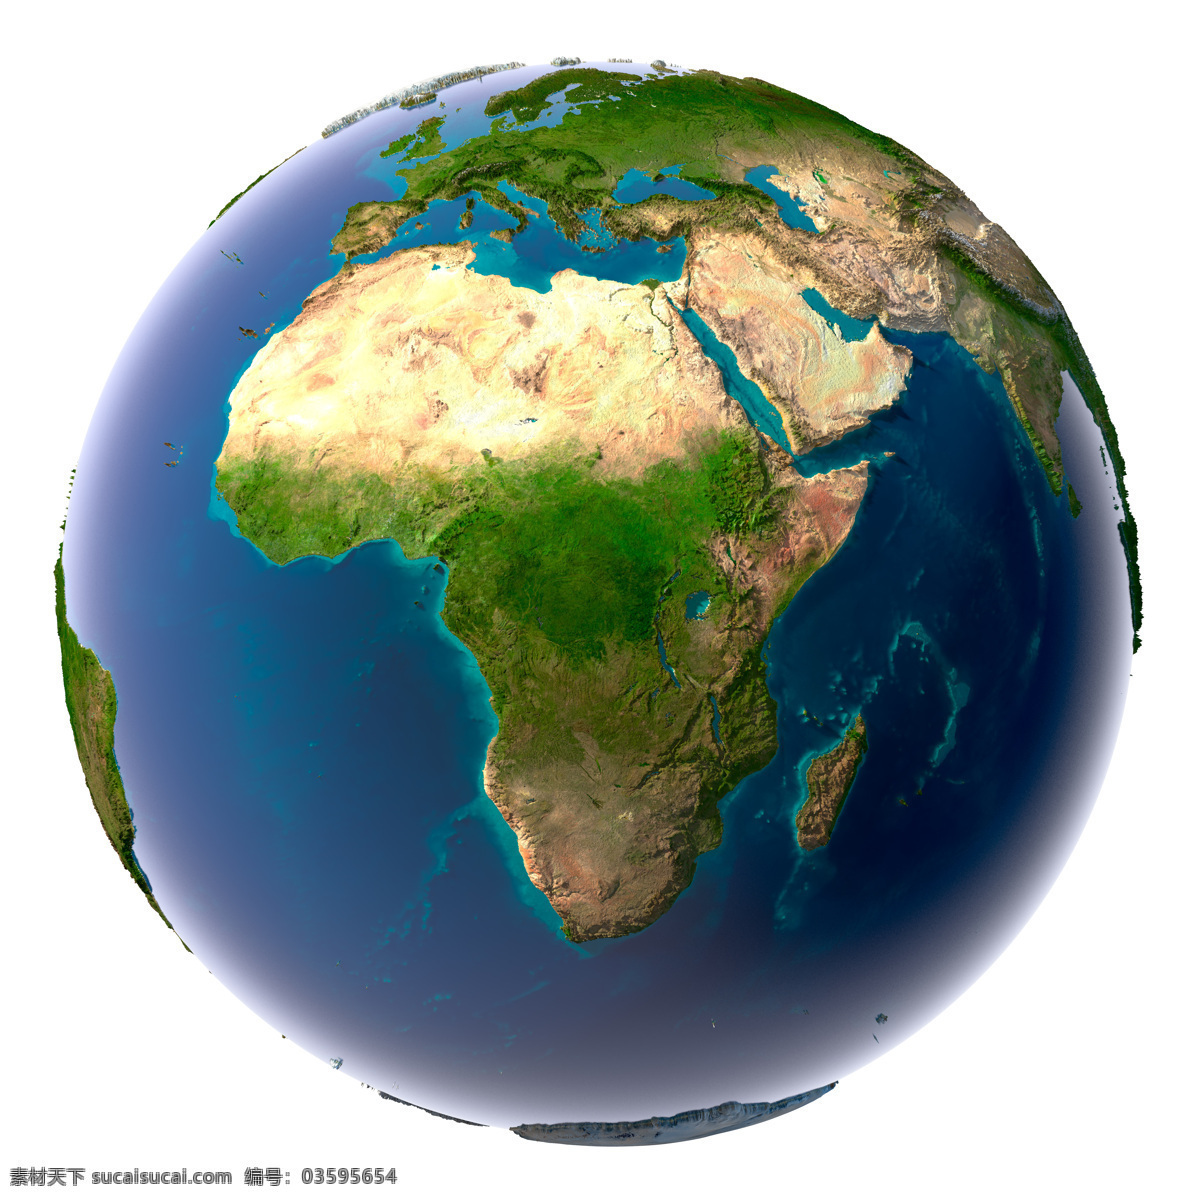 地球 上 非洲 大陆 非洲大陆 创意地球 绿色环保 地球保护 环境保护 其他类别 生活百科 白色